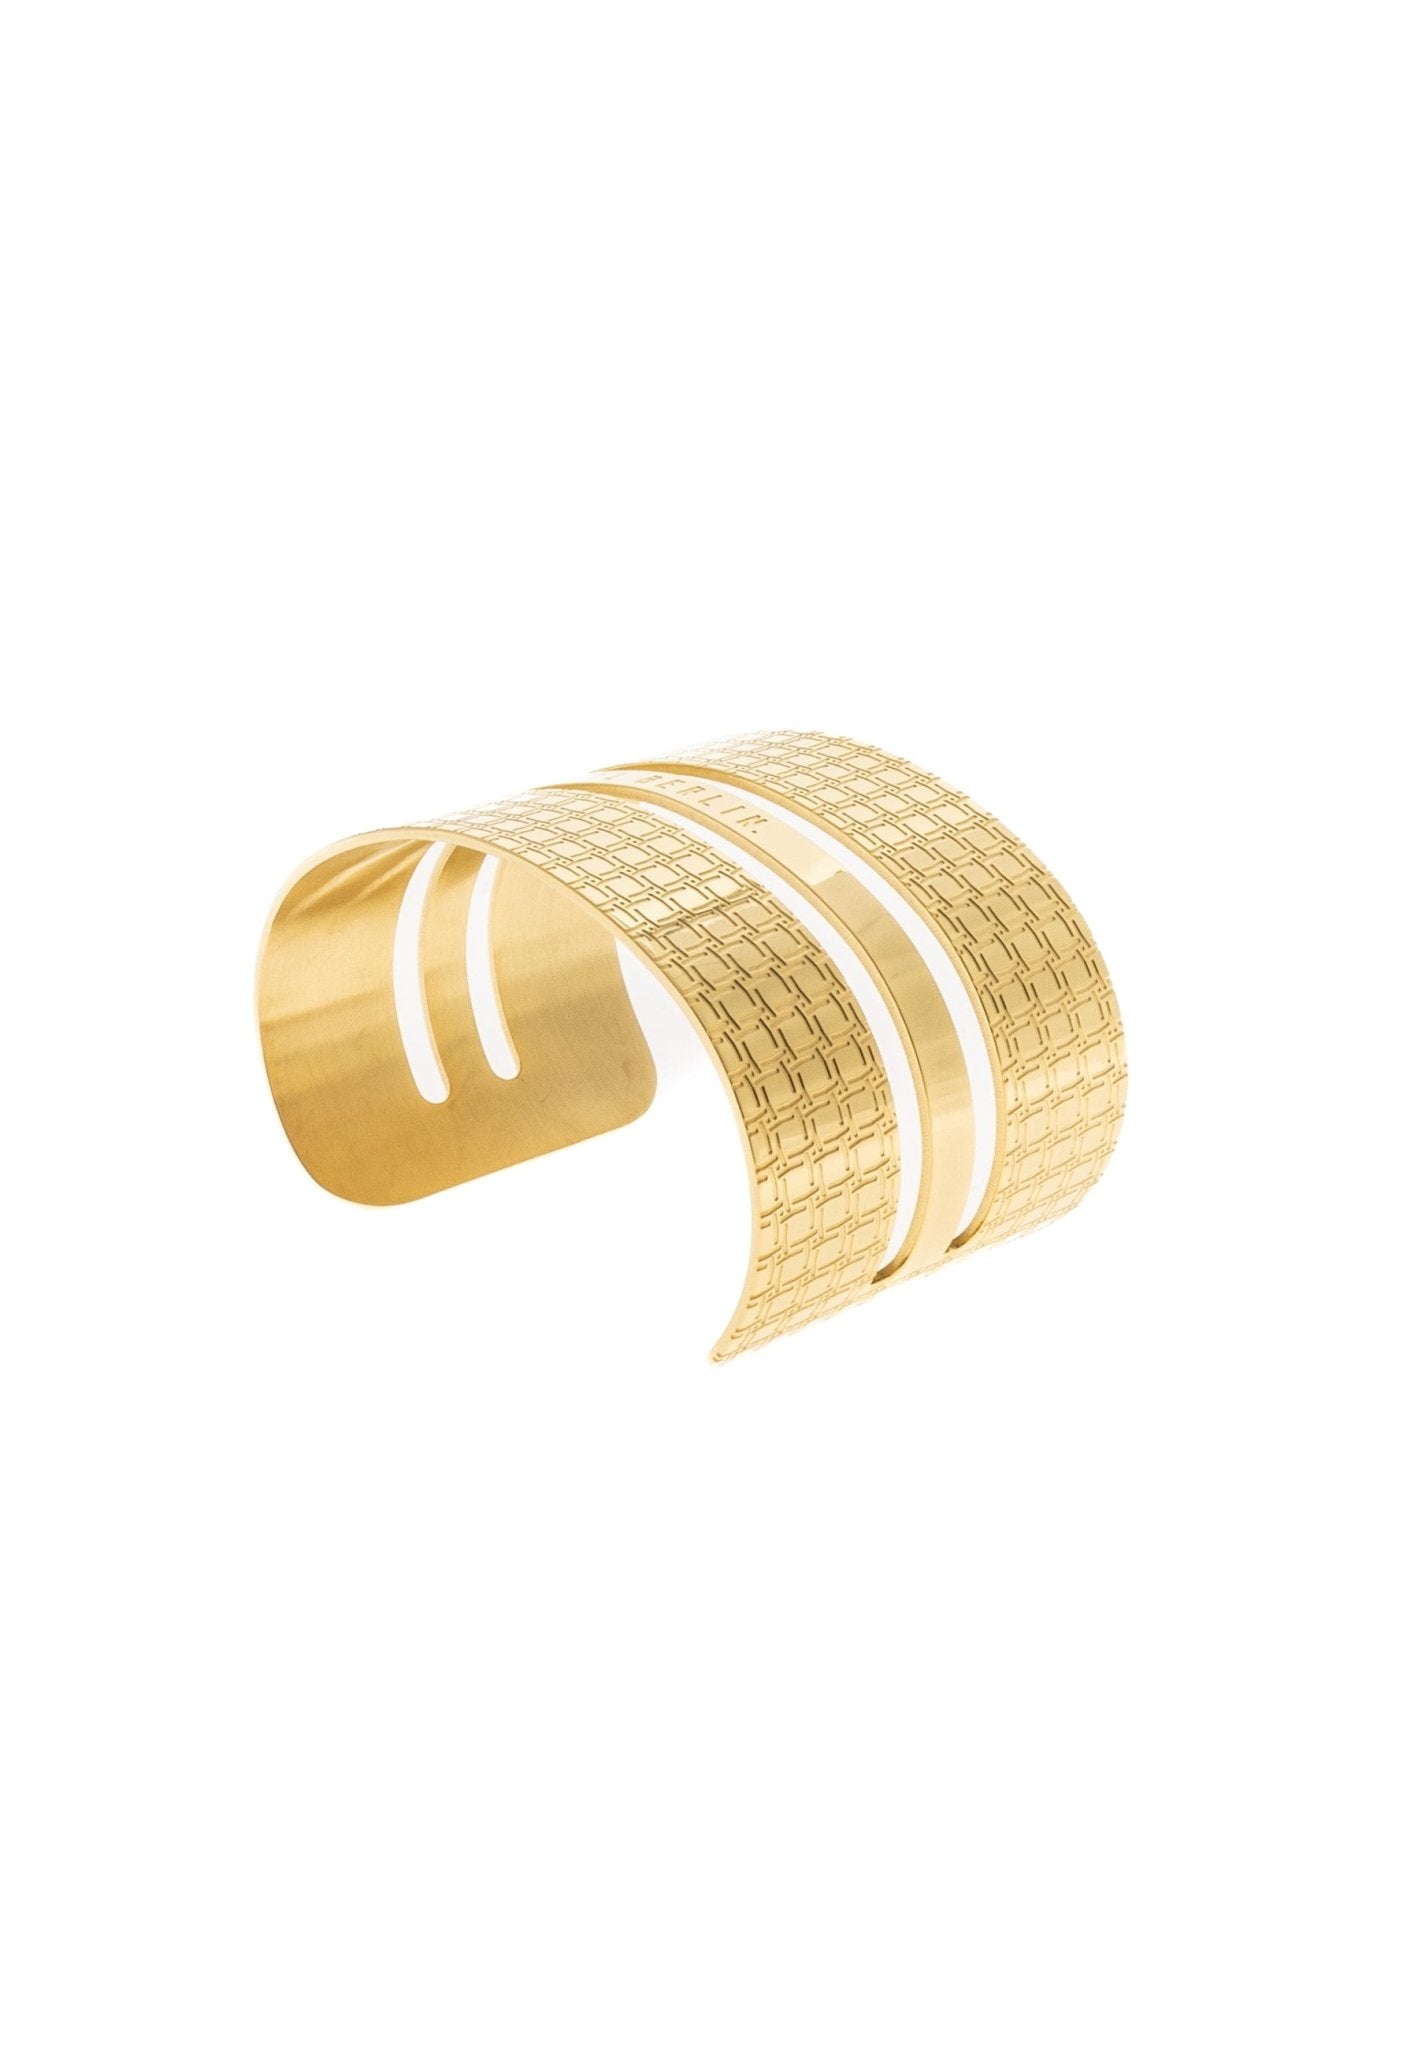 Wide Open Cuff Bracelet “The Shieldmaiden” - MYL BERLIN - 4260654112368 - 4260654112368